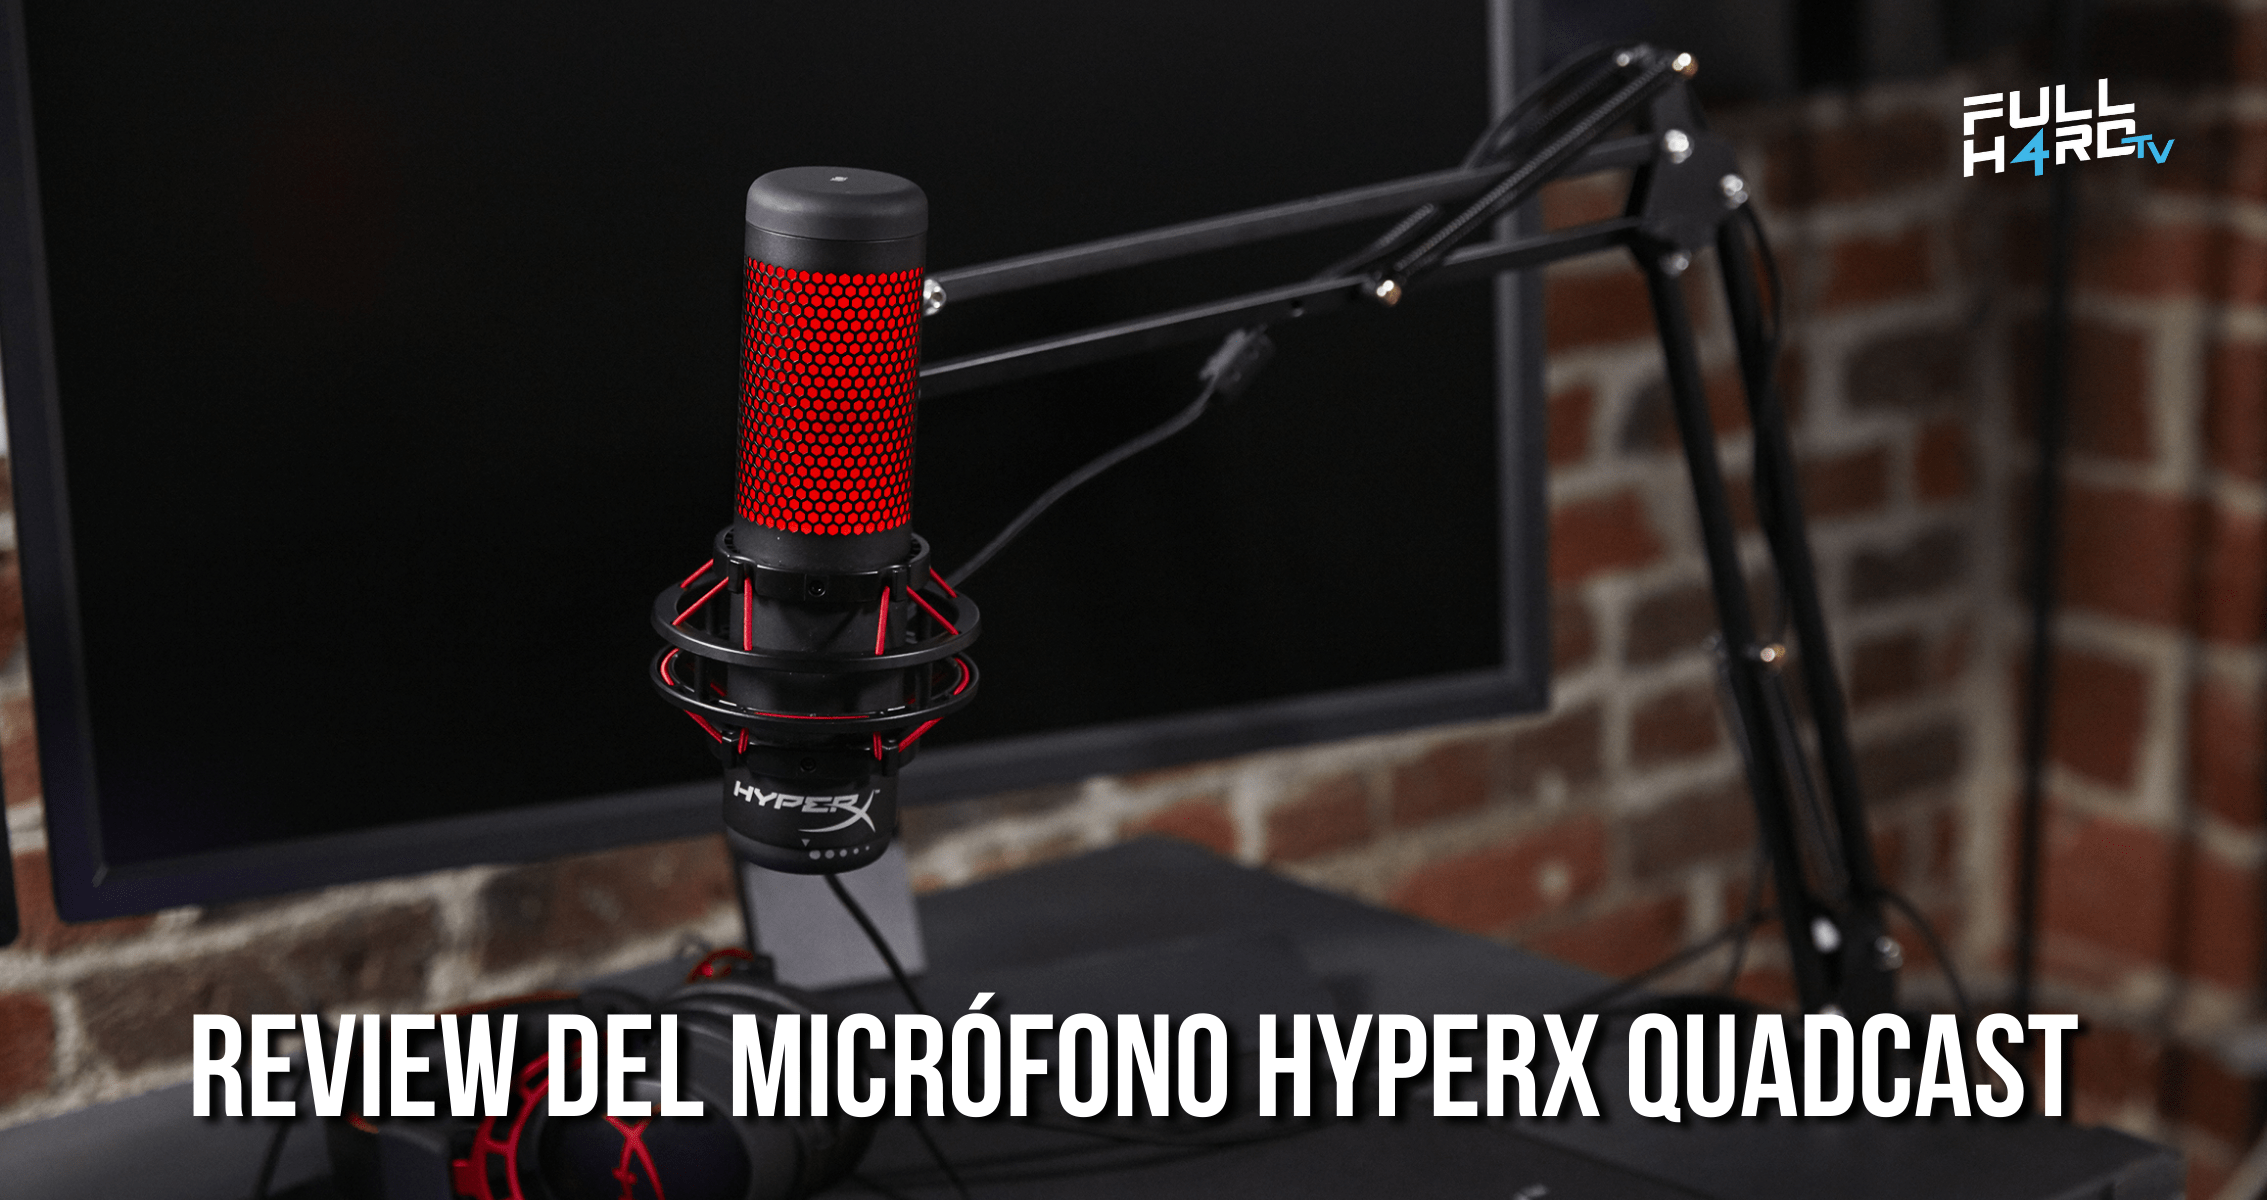 Review del micrófono HyperX Quadcast